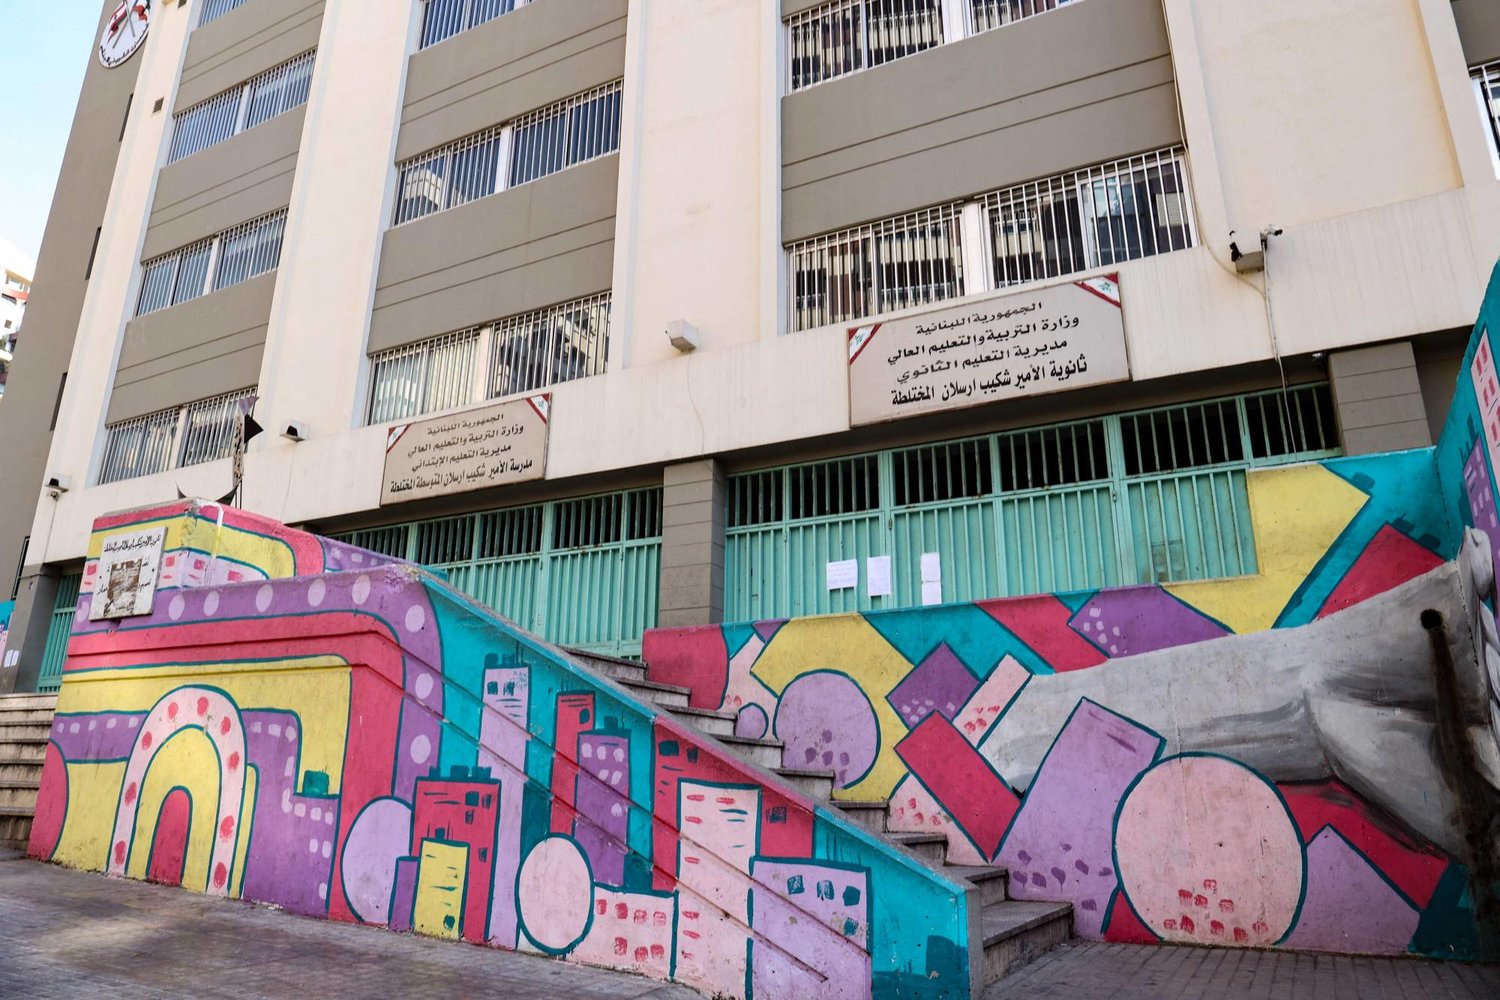 مدخل مدرسة رسمية مزين باللوحات الجدارية في بيروت (أ.ف.ب)